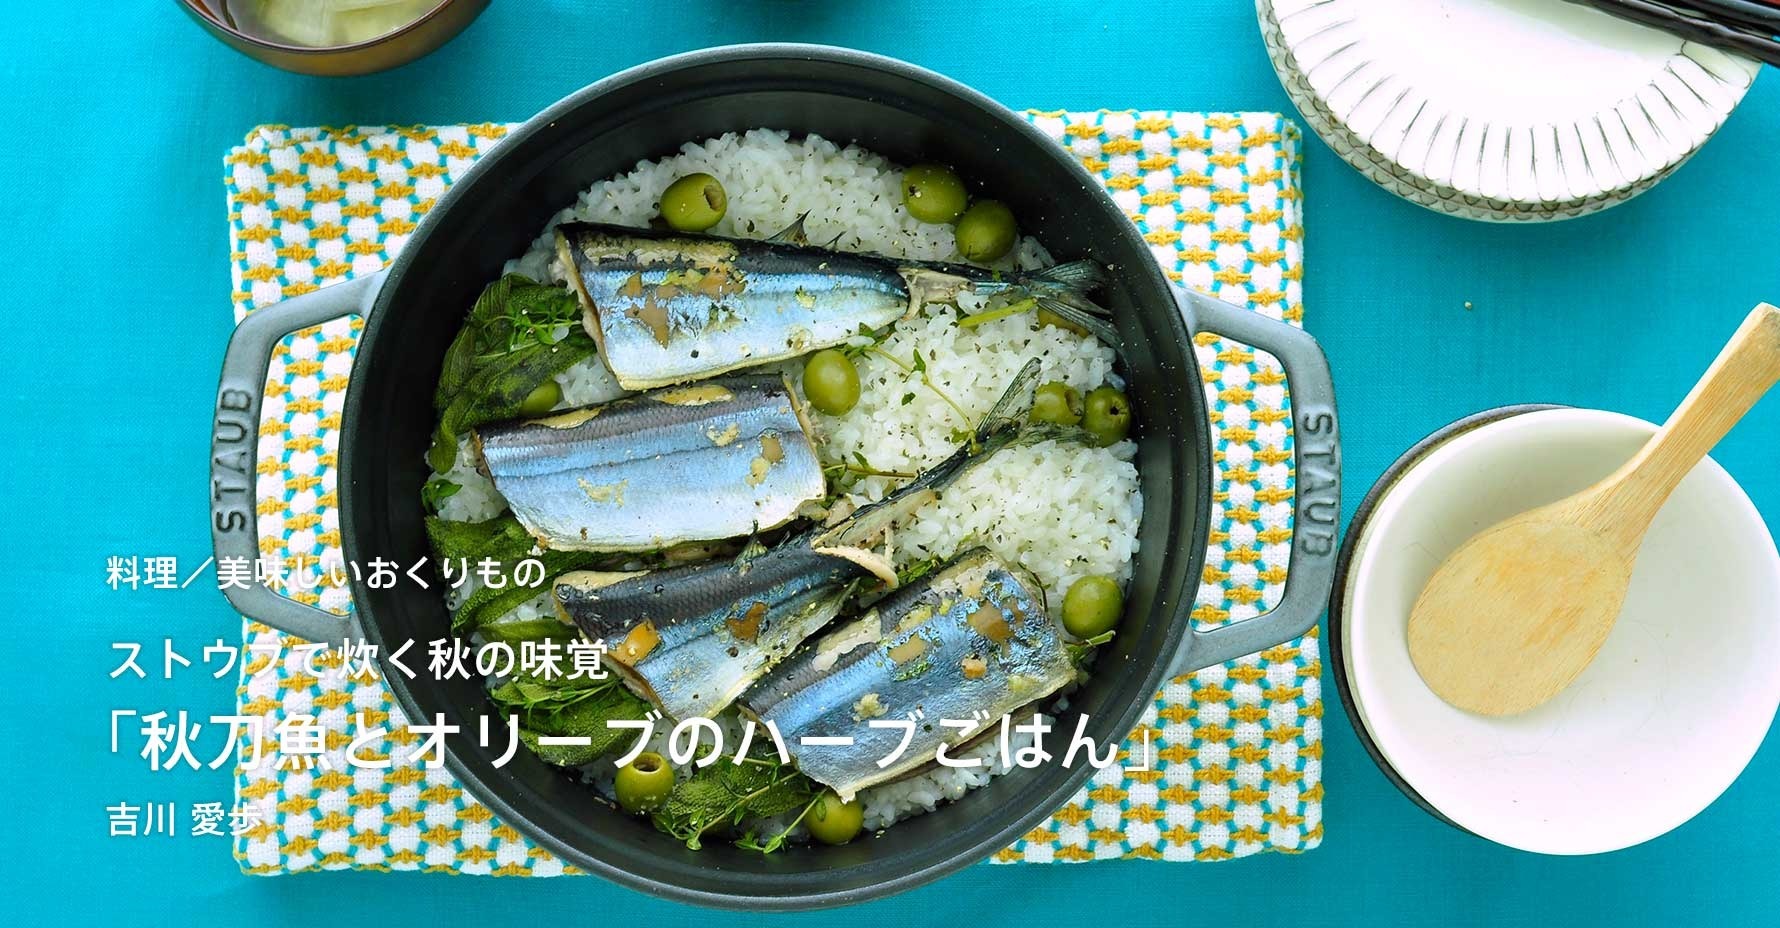 吉川愛歩さんのエッセイ〜ストウブで炊く秋の味覚「秋刀魚とオリーブのハーブごはん」を更新しました。